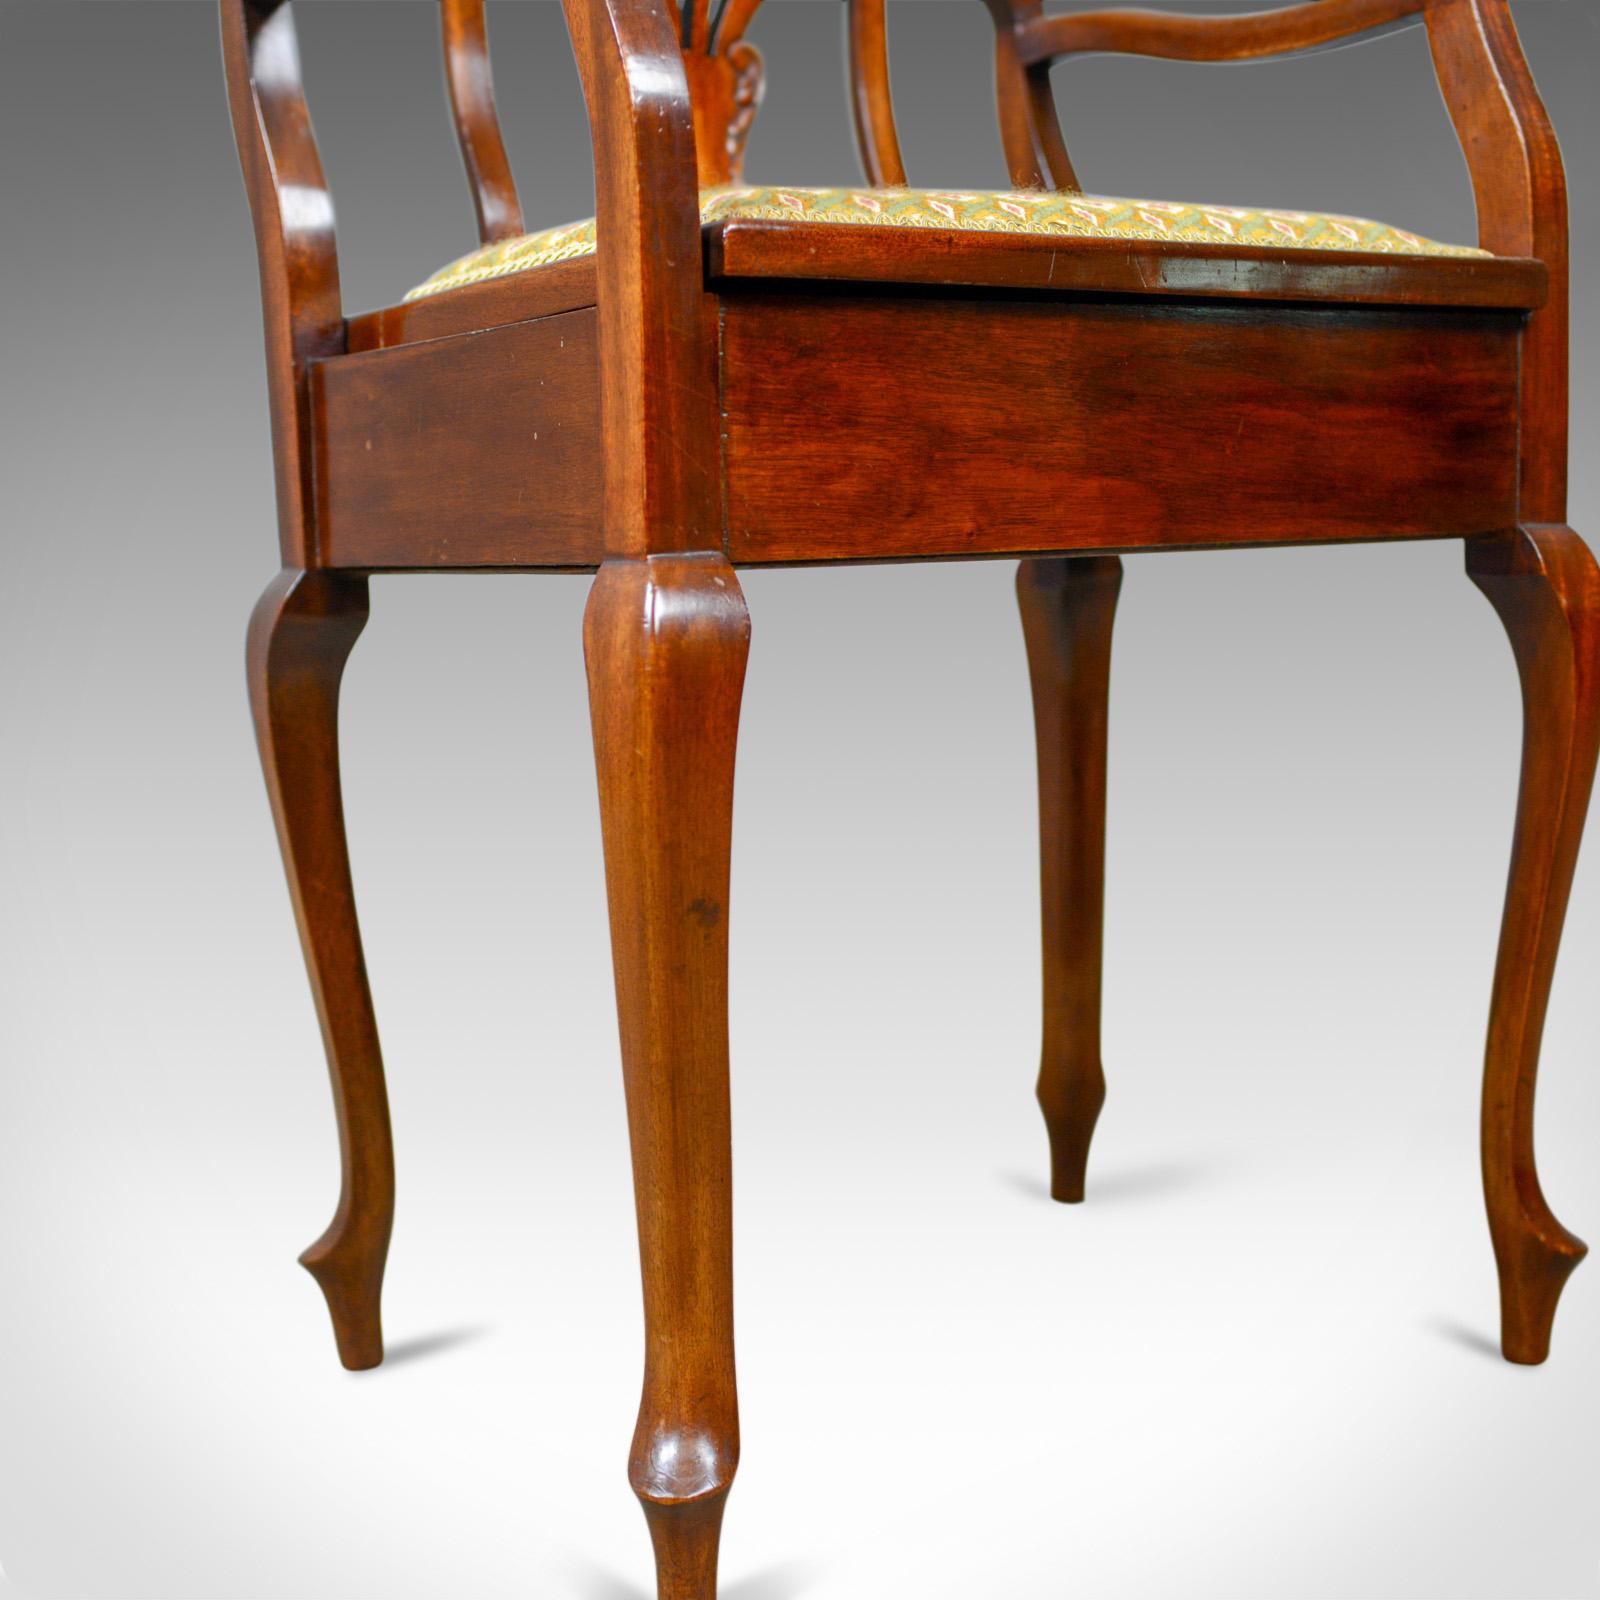 Antique Music Stool, English, Edwardian, Mahogany, Piano Seat, Needlepoint 4